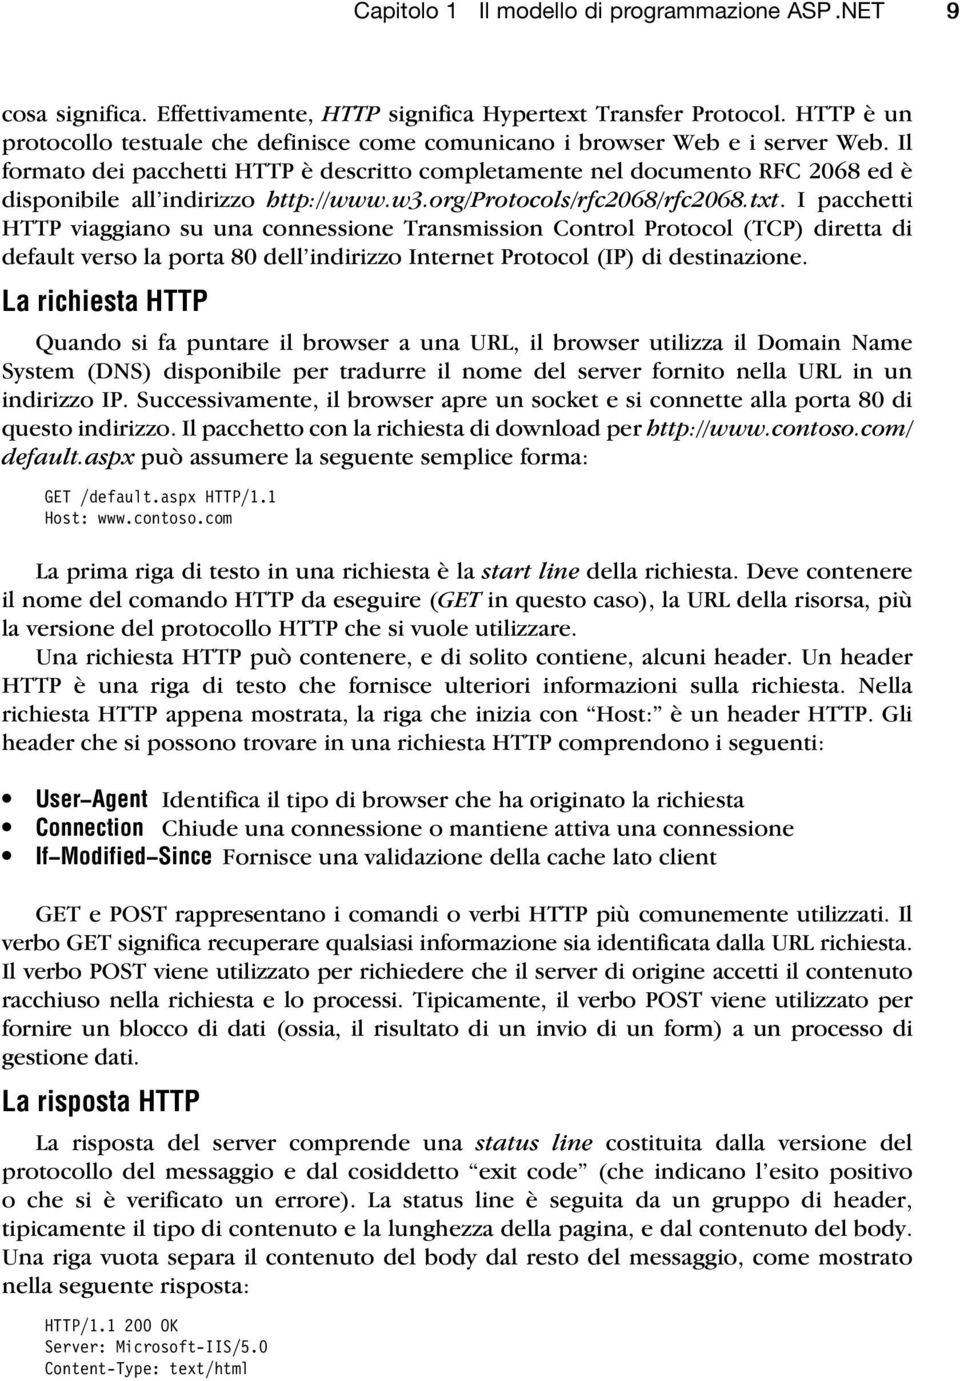 Il formato dei pacchetti HTTP è descritto completamente nel documento RFC 2068 ed è disponibile all indirizzo http://www.w3.org/protocols/rfc2068/rfc2068.txt.